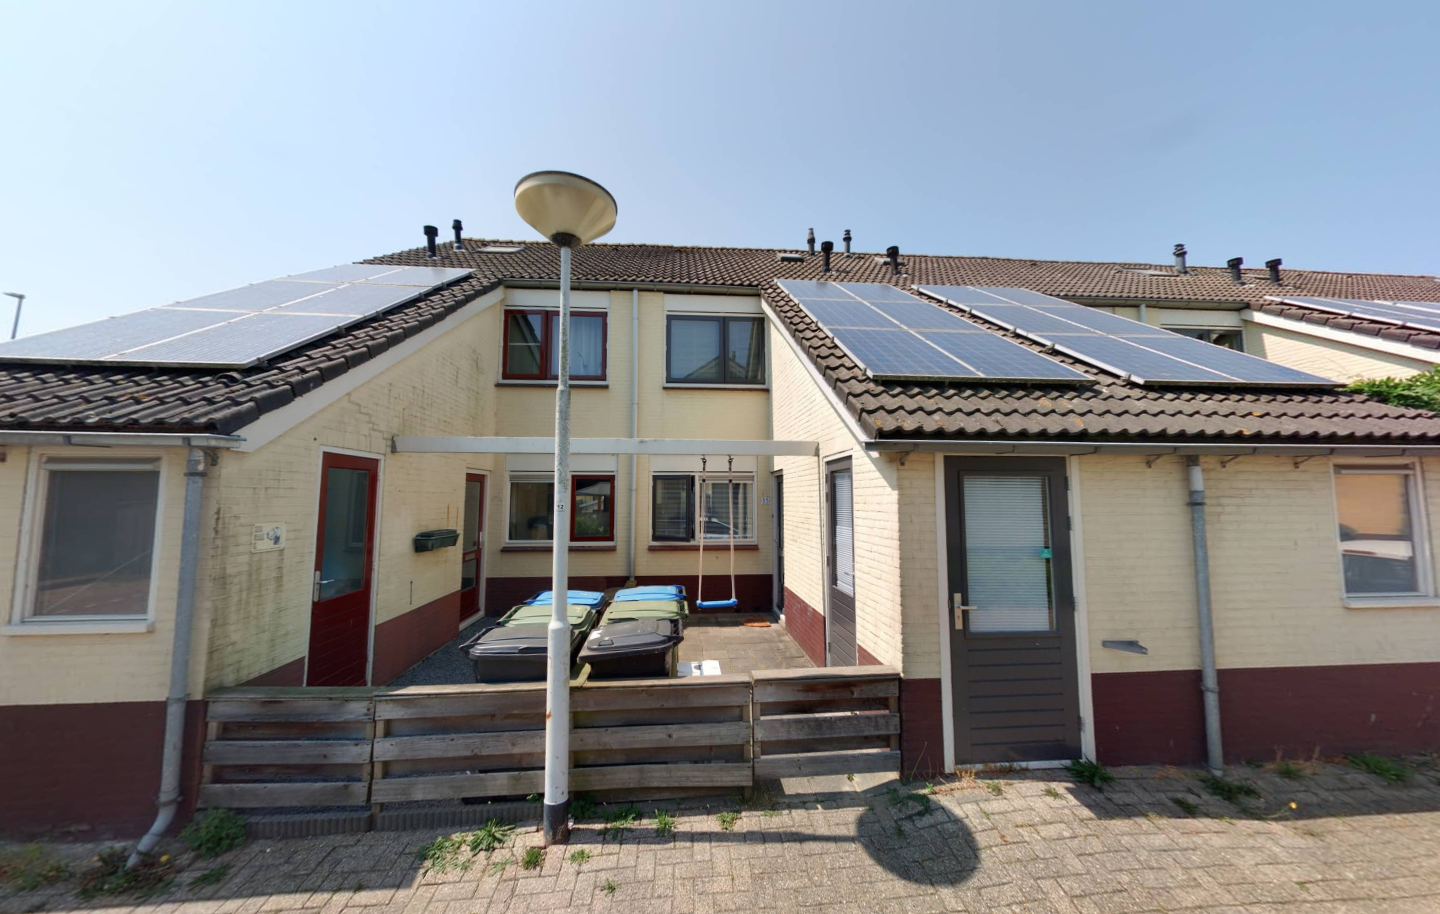 Hof van de Paltz 55, 4625 EN Bergen op Zoom, Nederland